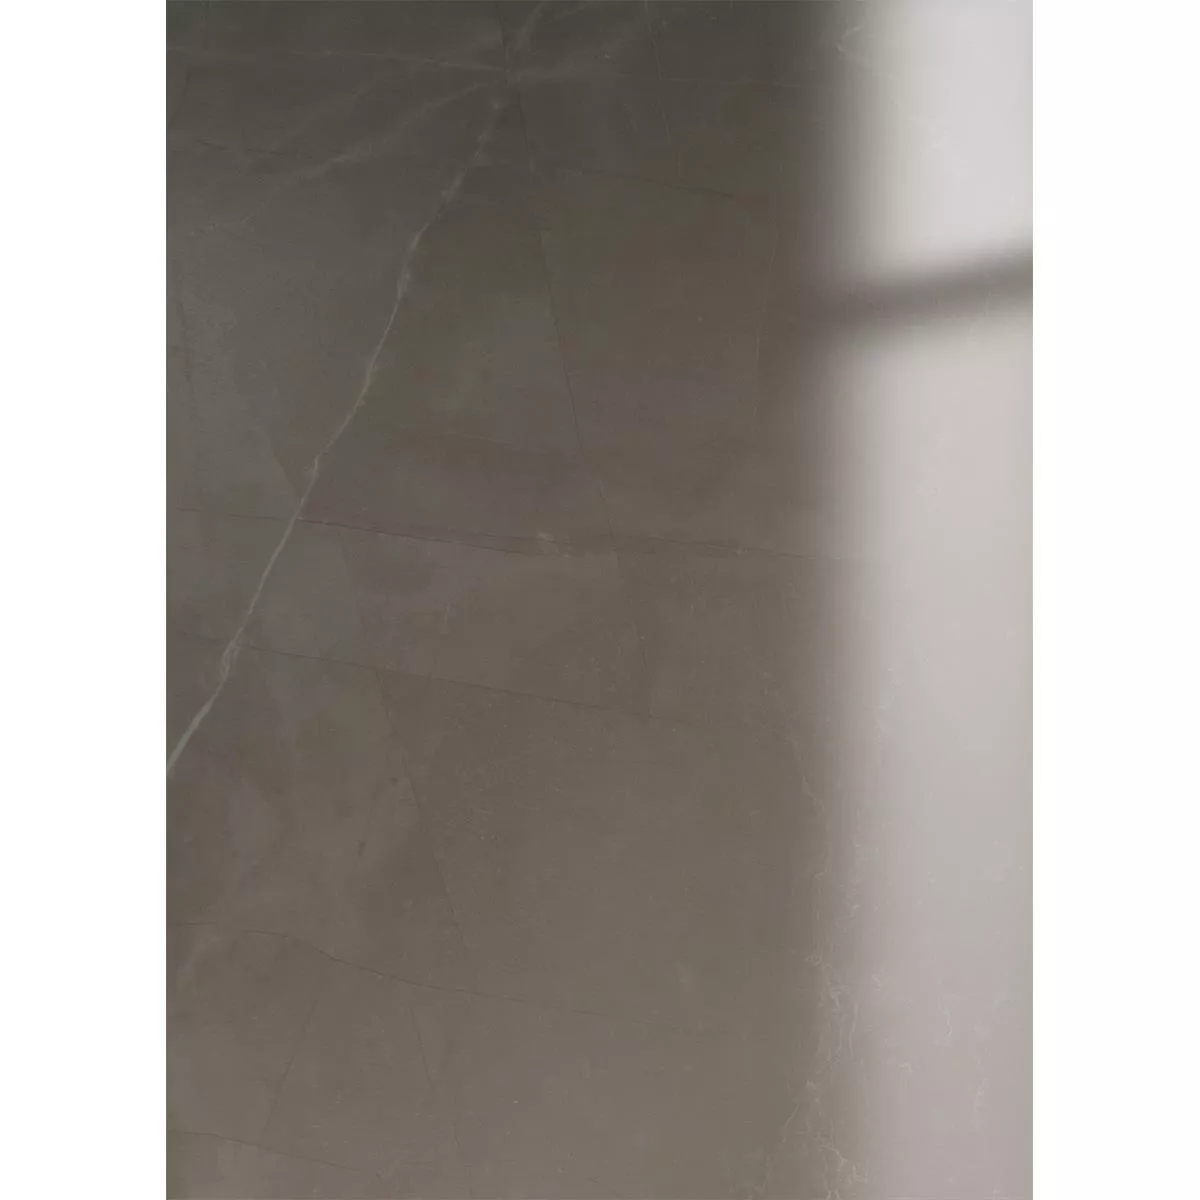 Bodenfliesen Manarola Marmoroptik Glänzend Poliert Braun 60x120cm